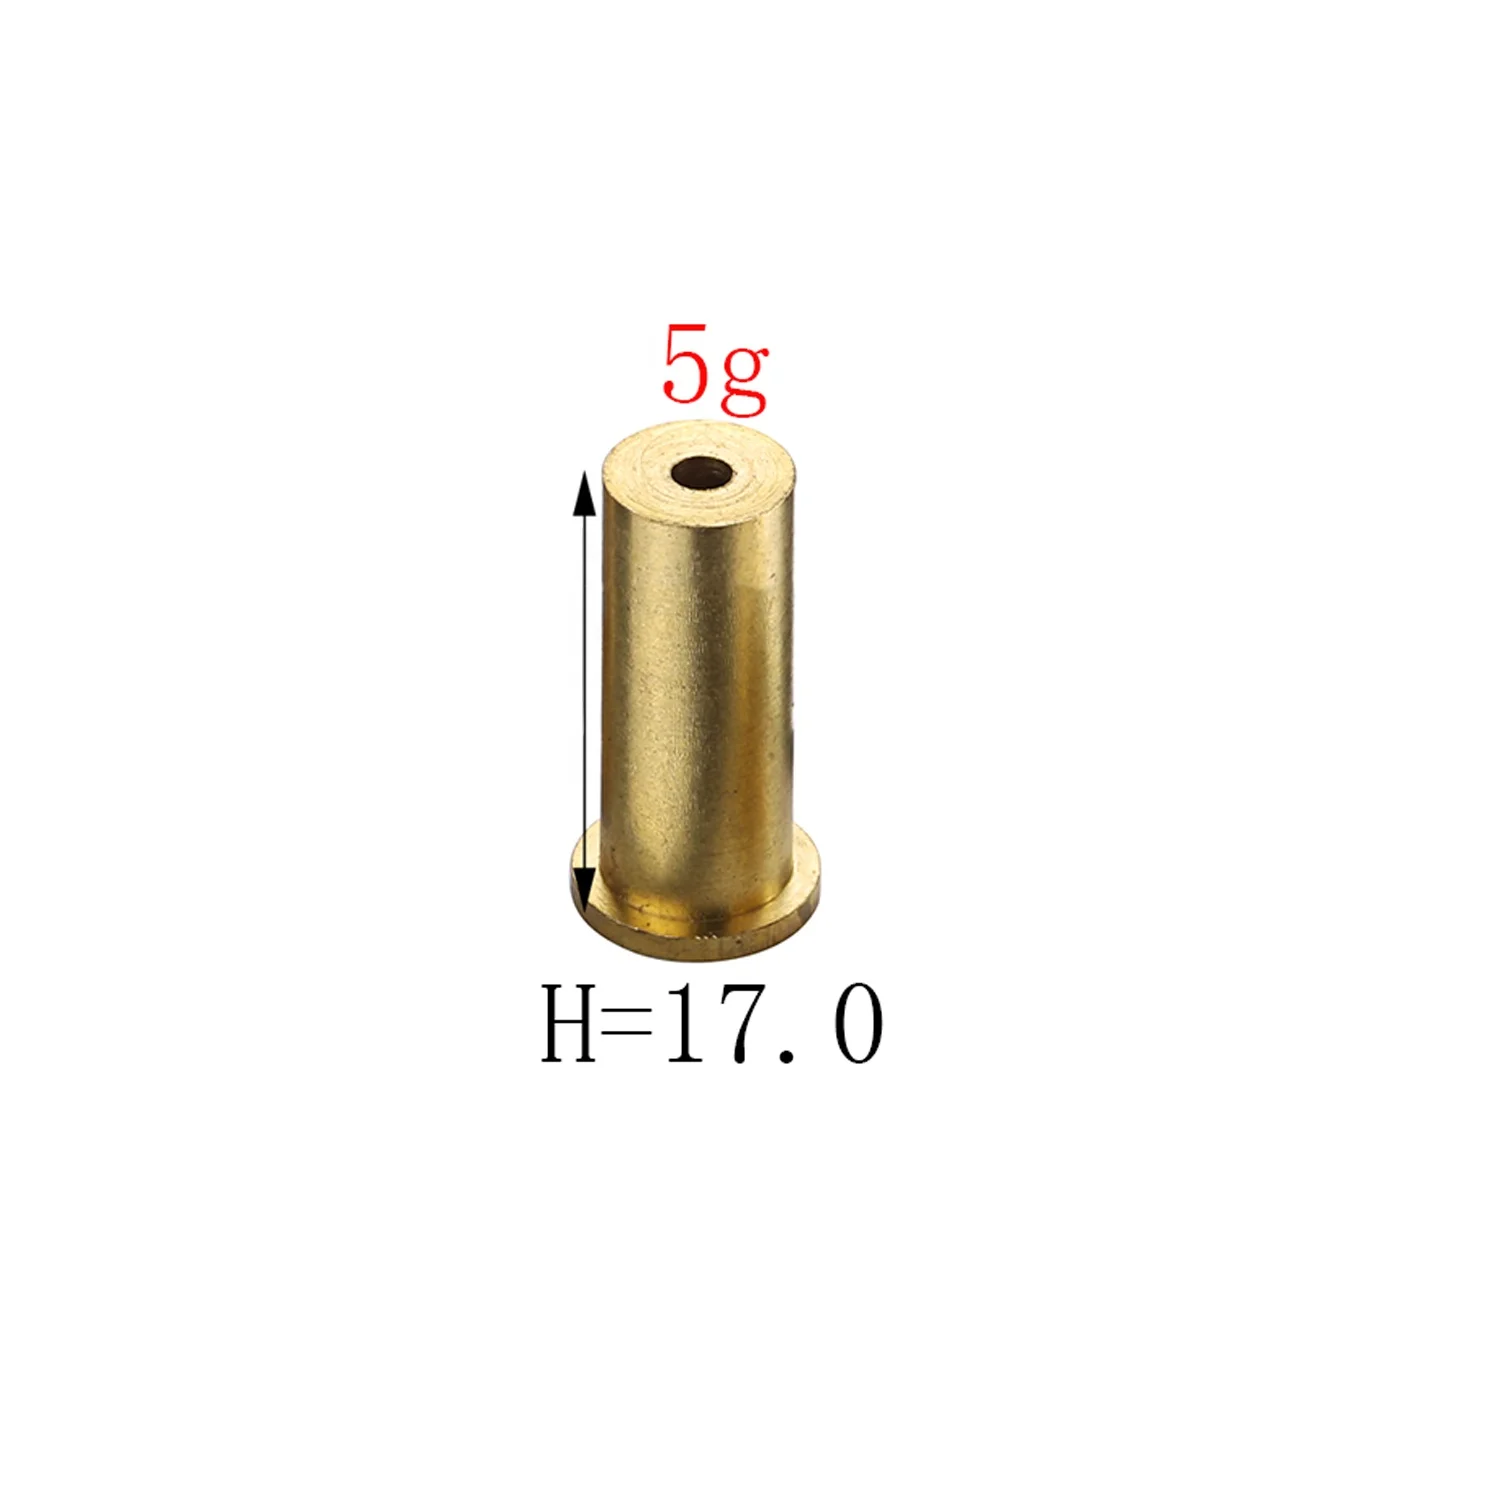 
Golf Brass Shaft Tip Plug Swing Weight - 2g3g4g5g6g7g8g9g10g for golf Iron shaft 